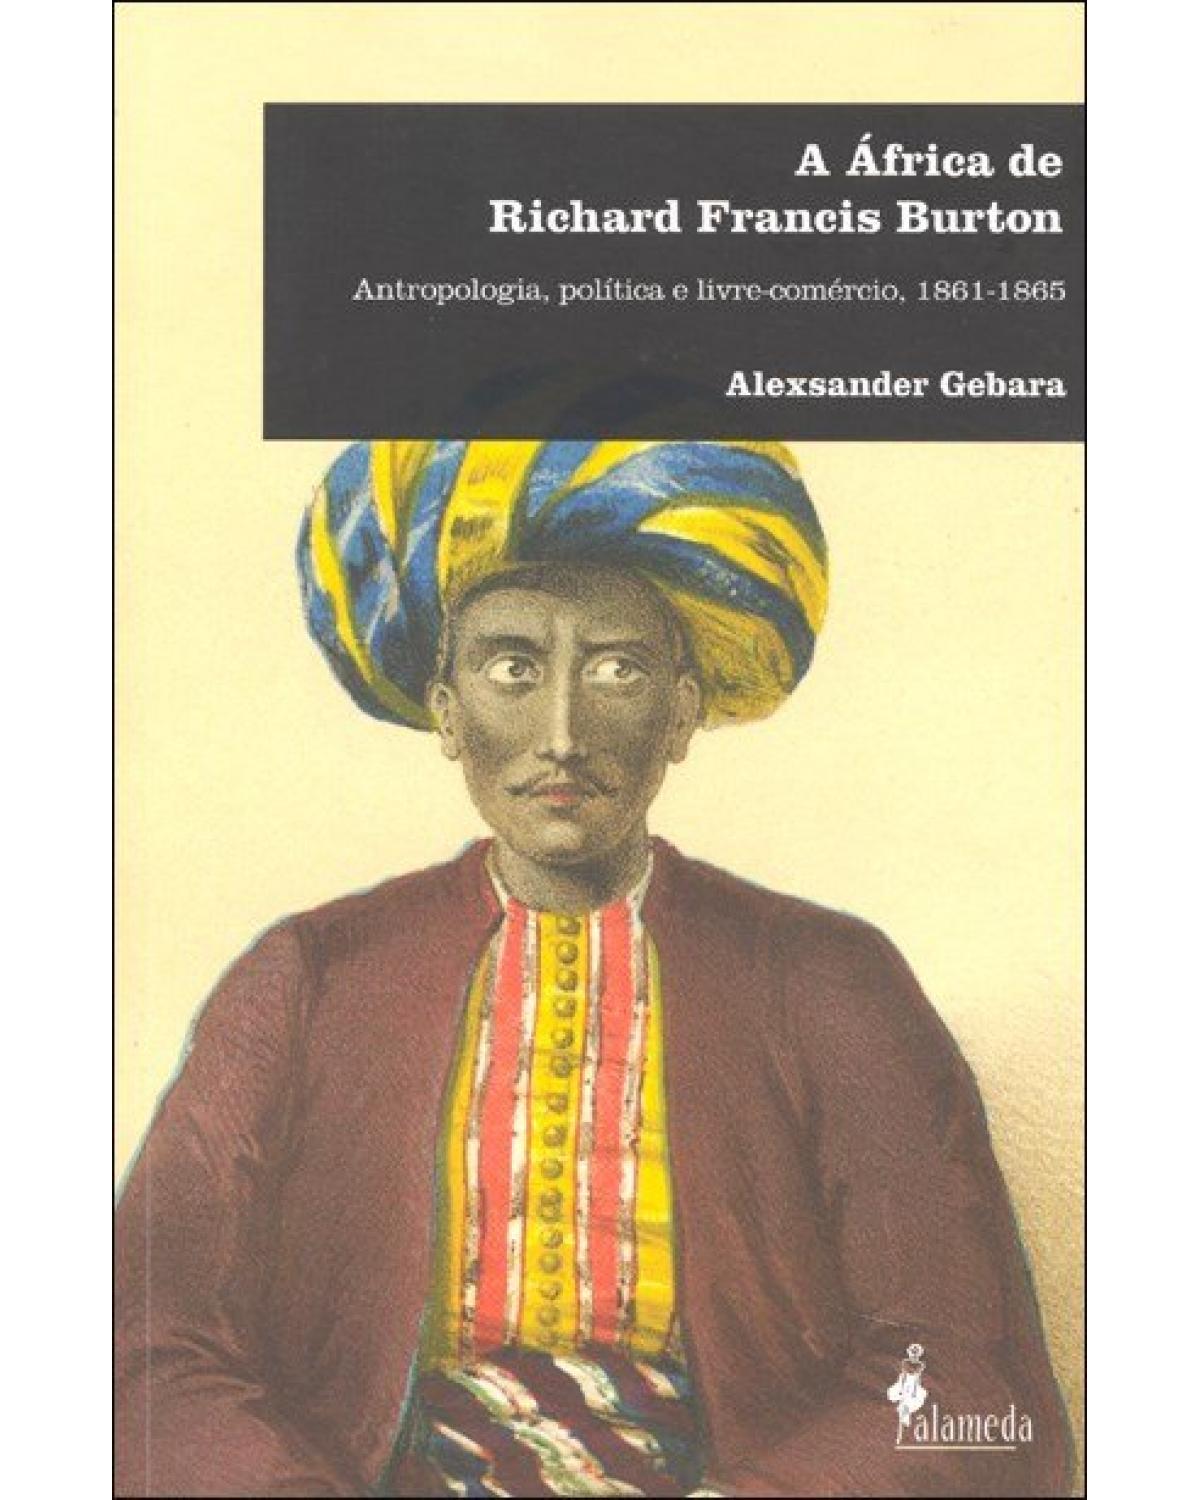 A África de Richard Francis Burton - antropologia, política e livre-comércio, 1861-1865 - 1ª Edição | 2010